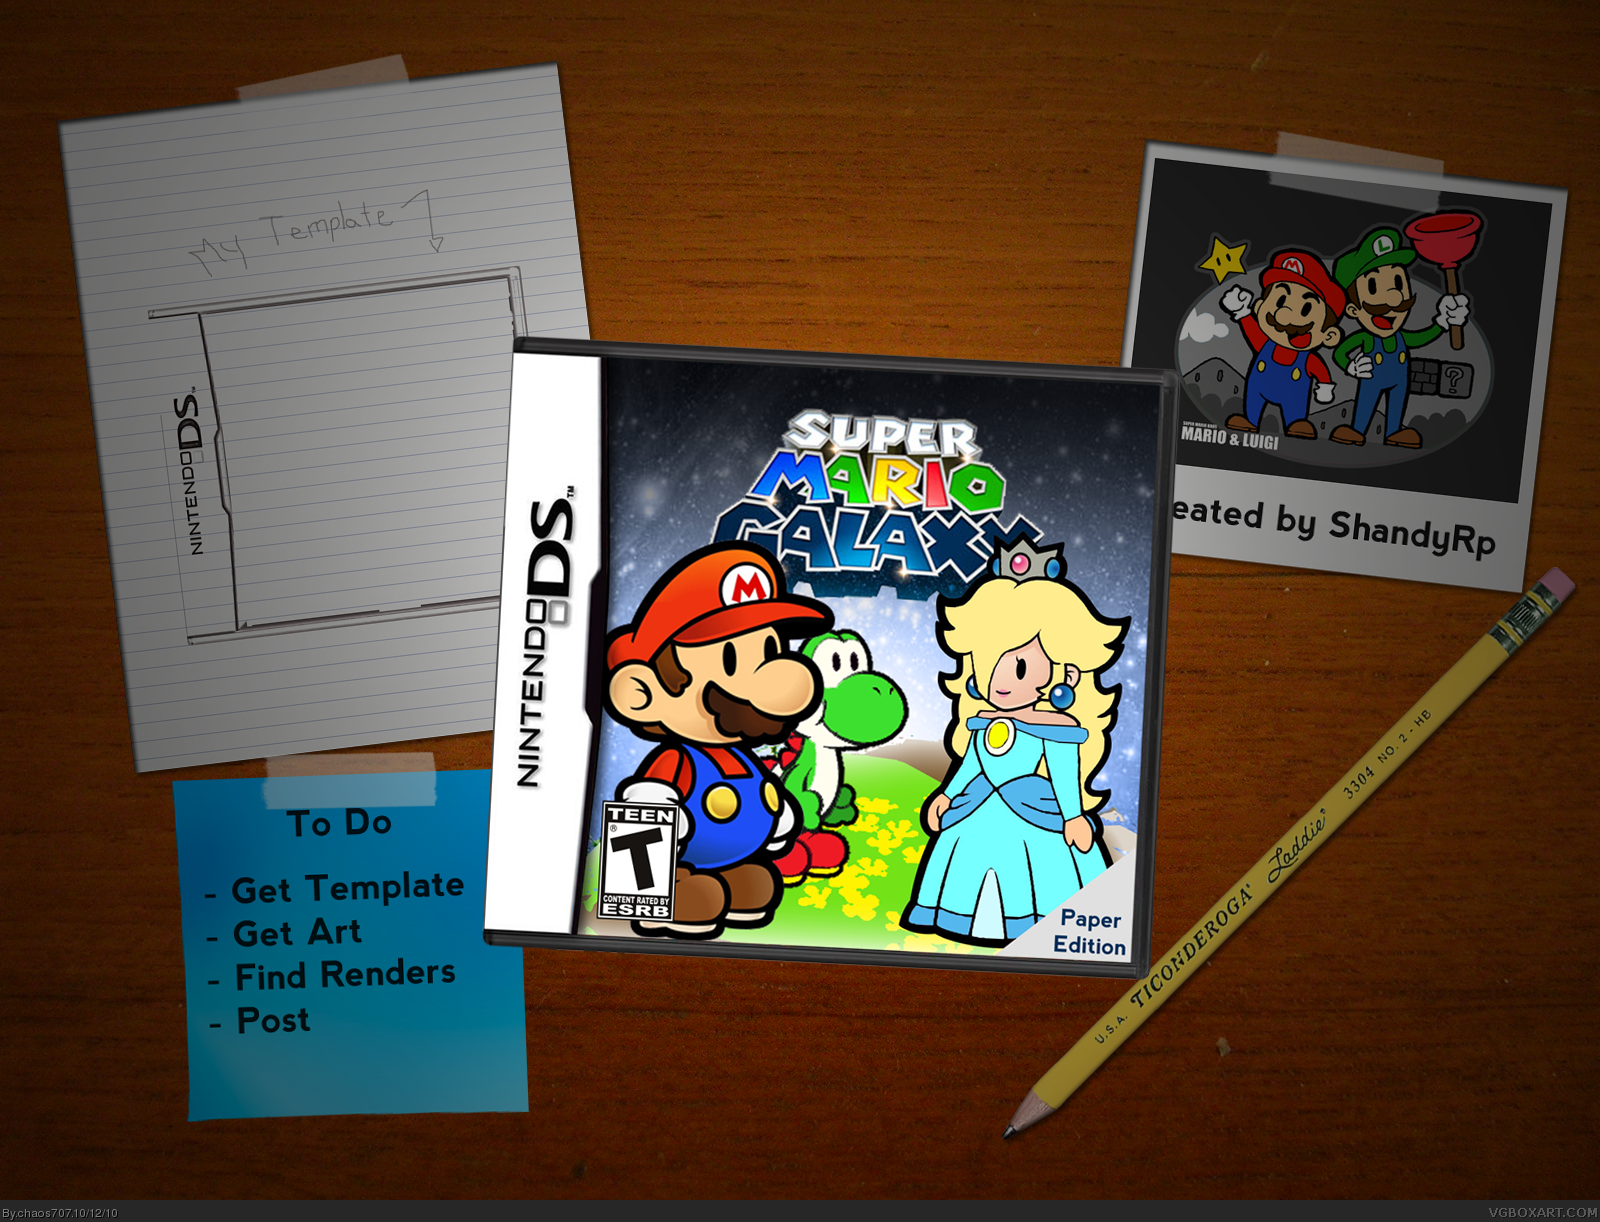 Super Mario Galaxy Paper Edition box cover